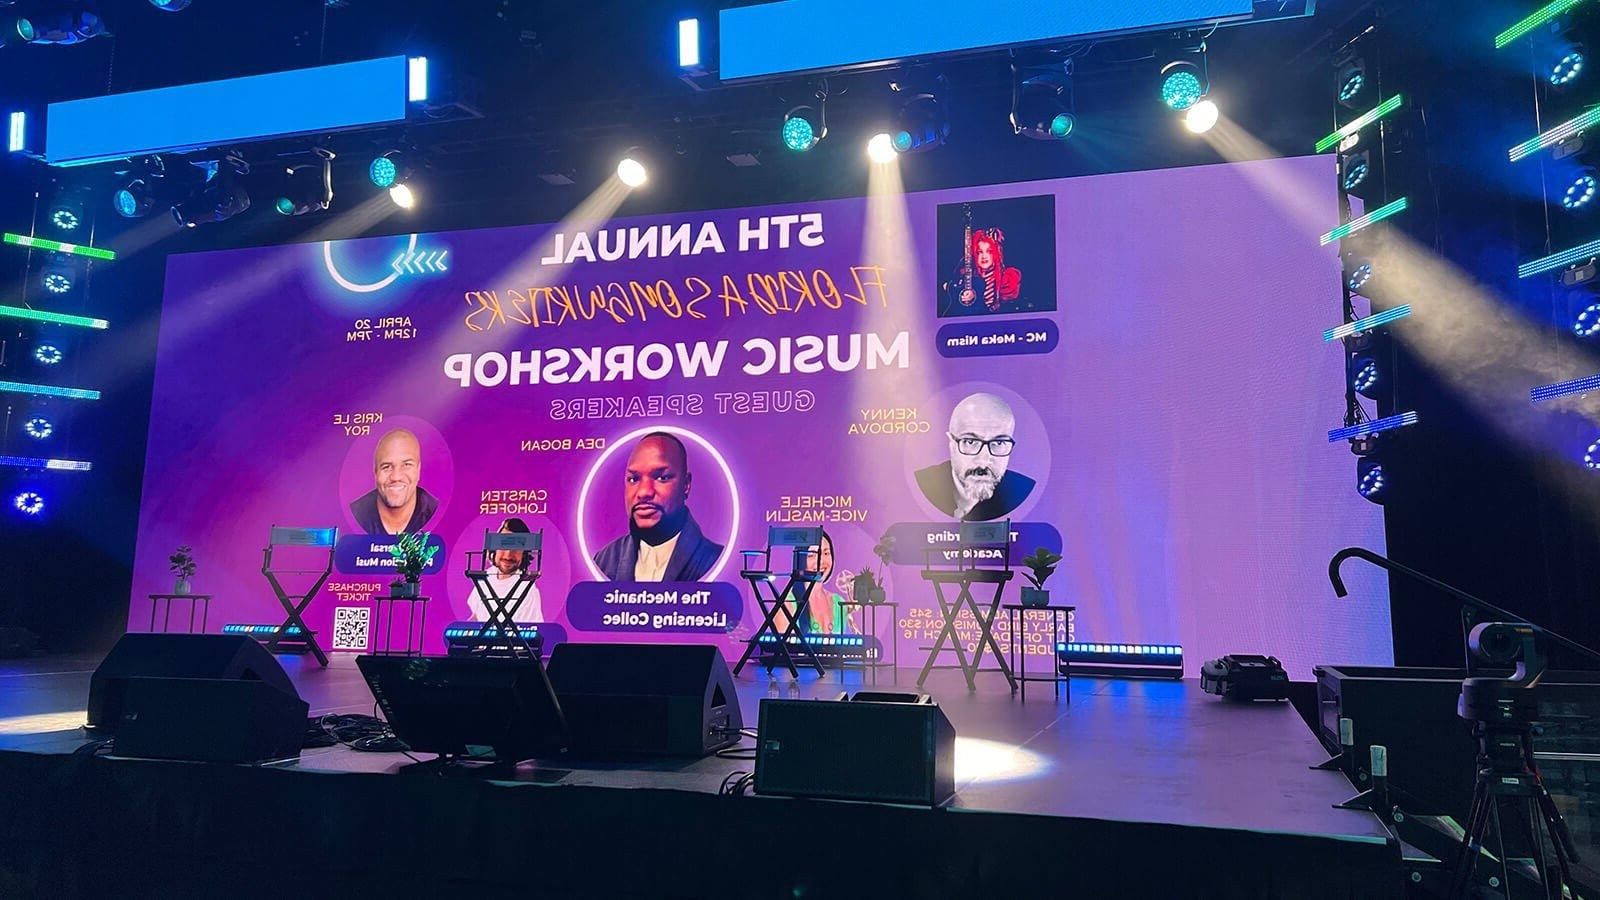 紫色背景的大屏幕上写着“第五届年度词曲作者音乐研讨会”. 屏幕位于灯光明亮的空舞台上方.